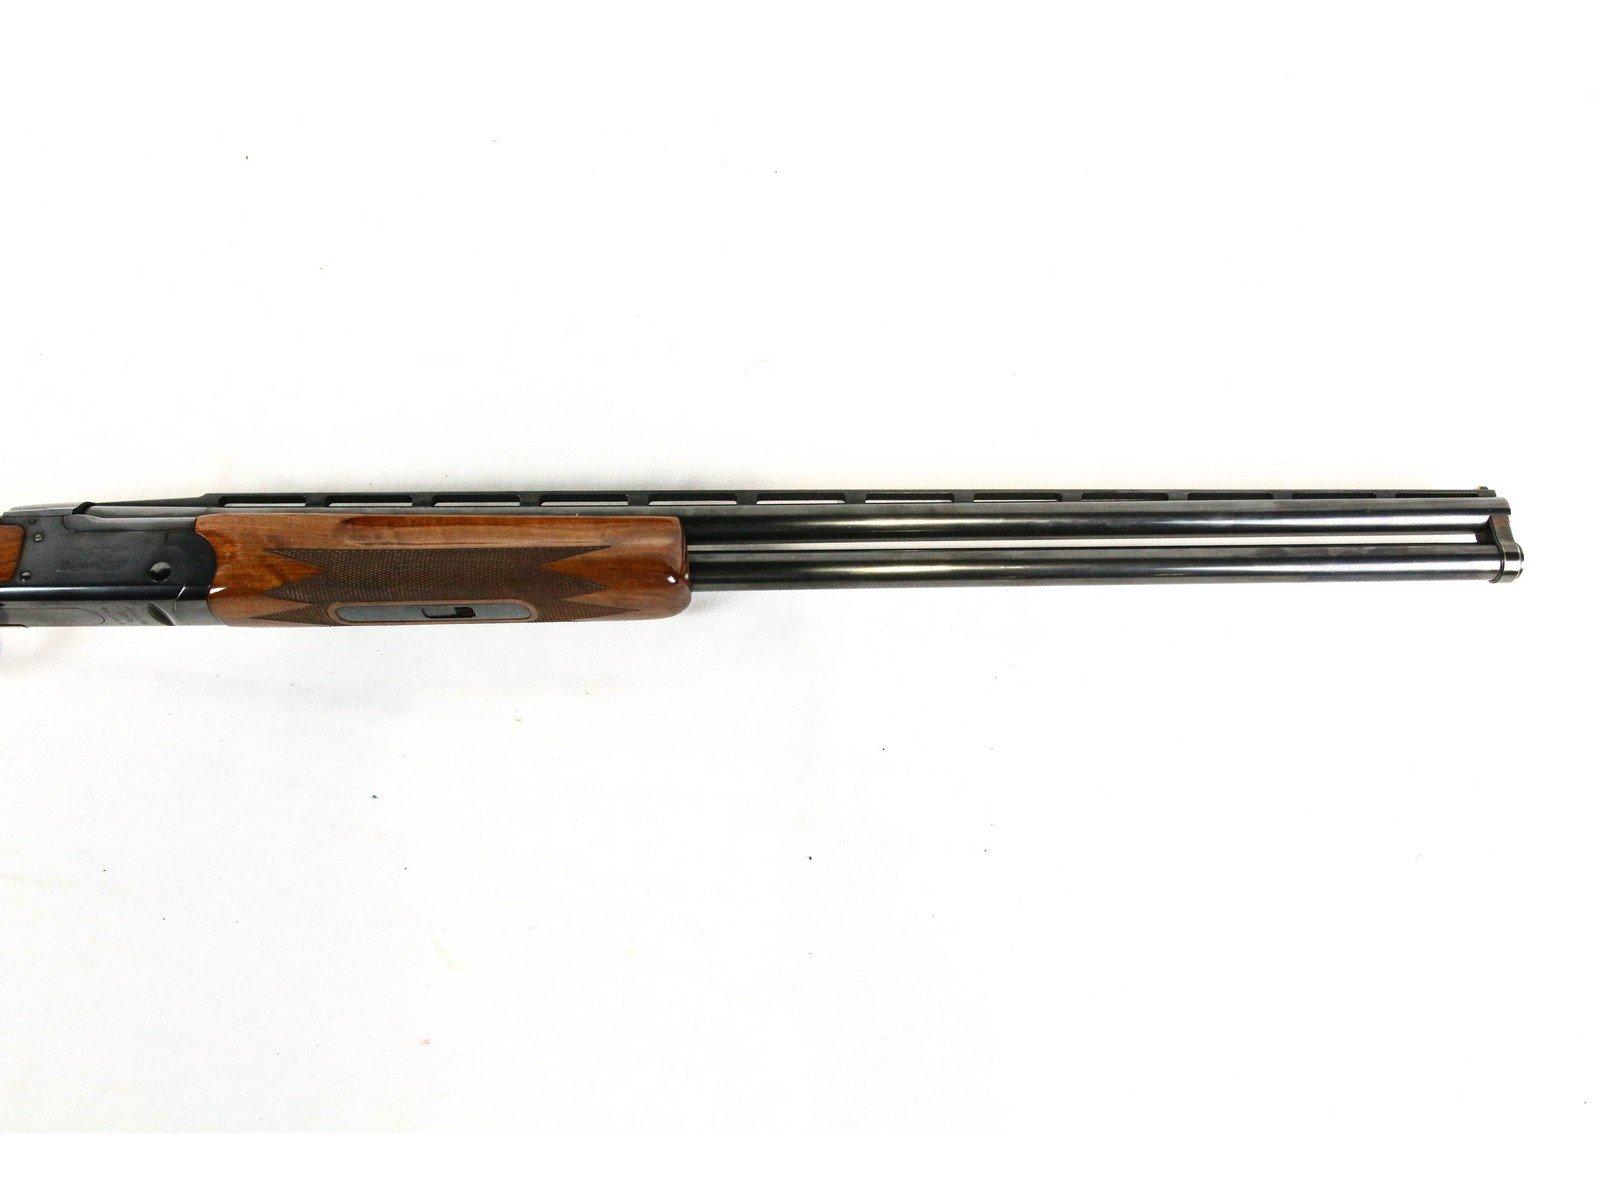 Remington Model 3200 Trap 12 GA Shotgun